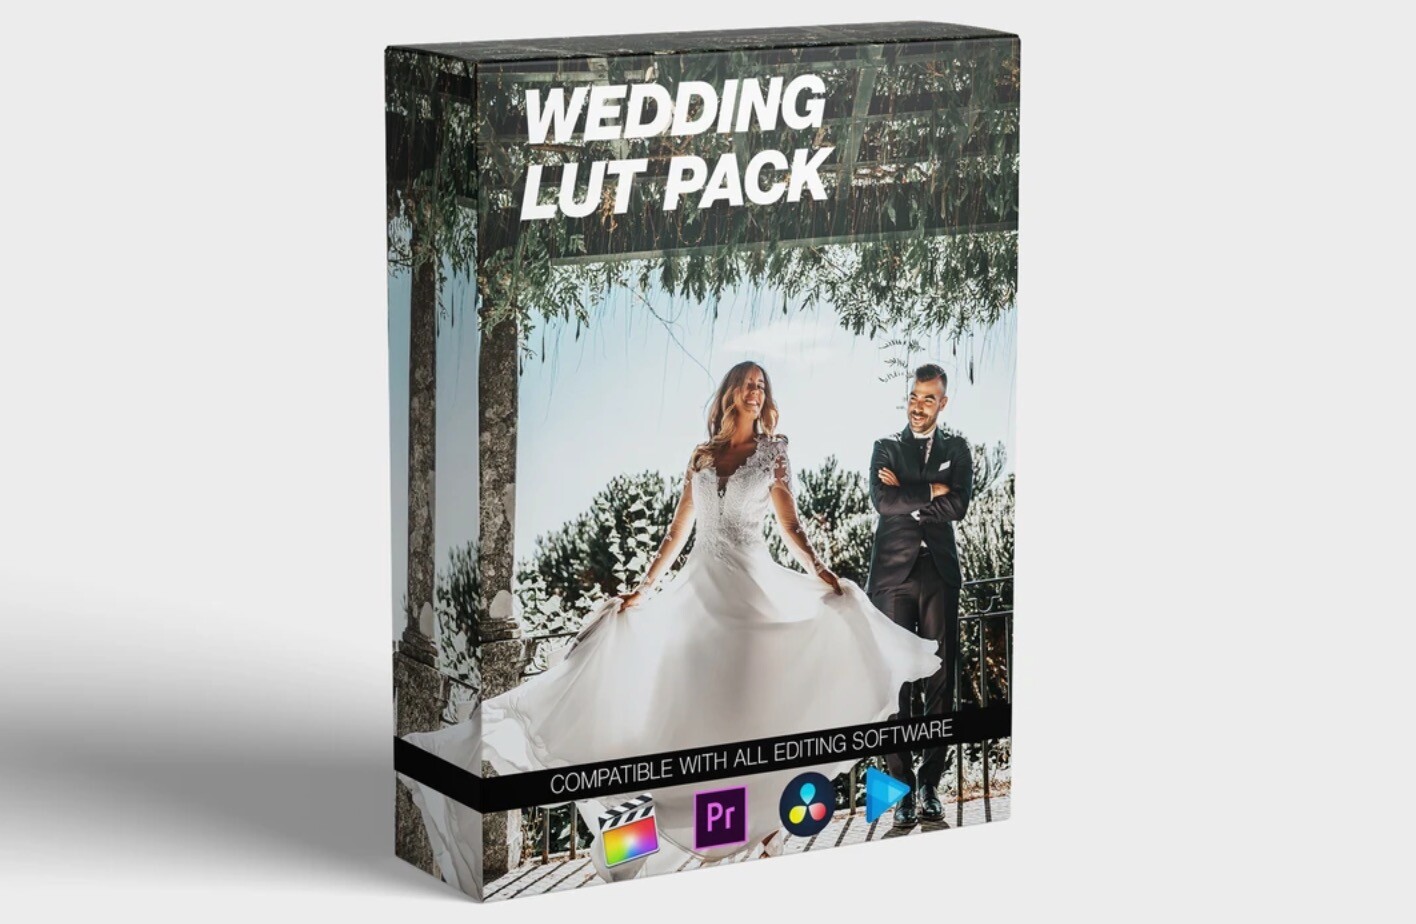 15个浪漫婚礼Wedding LUT Pack 调色预设